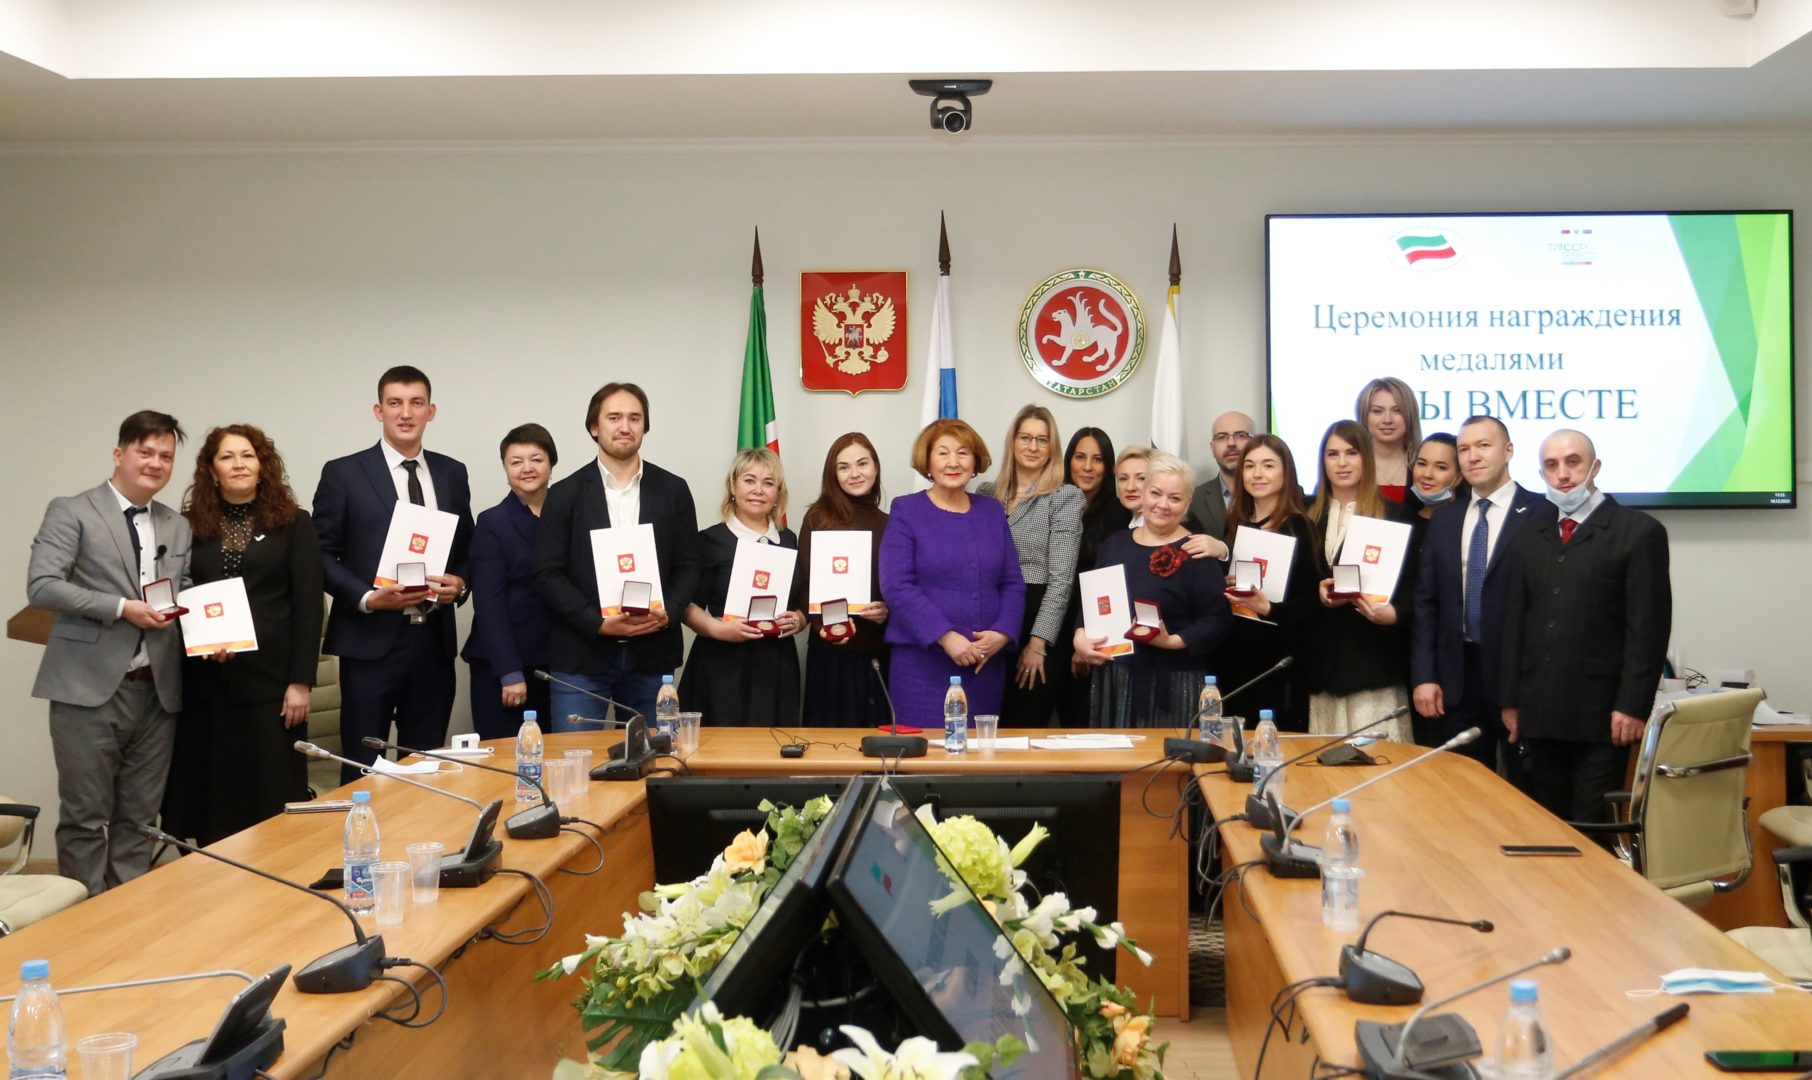 Социальным предпринимателям Республики Татарстан были вручены медали #Мывместе